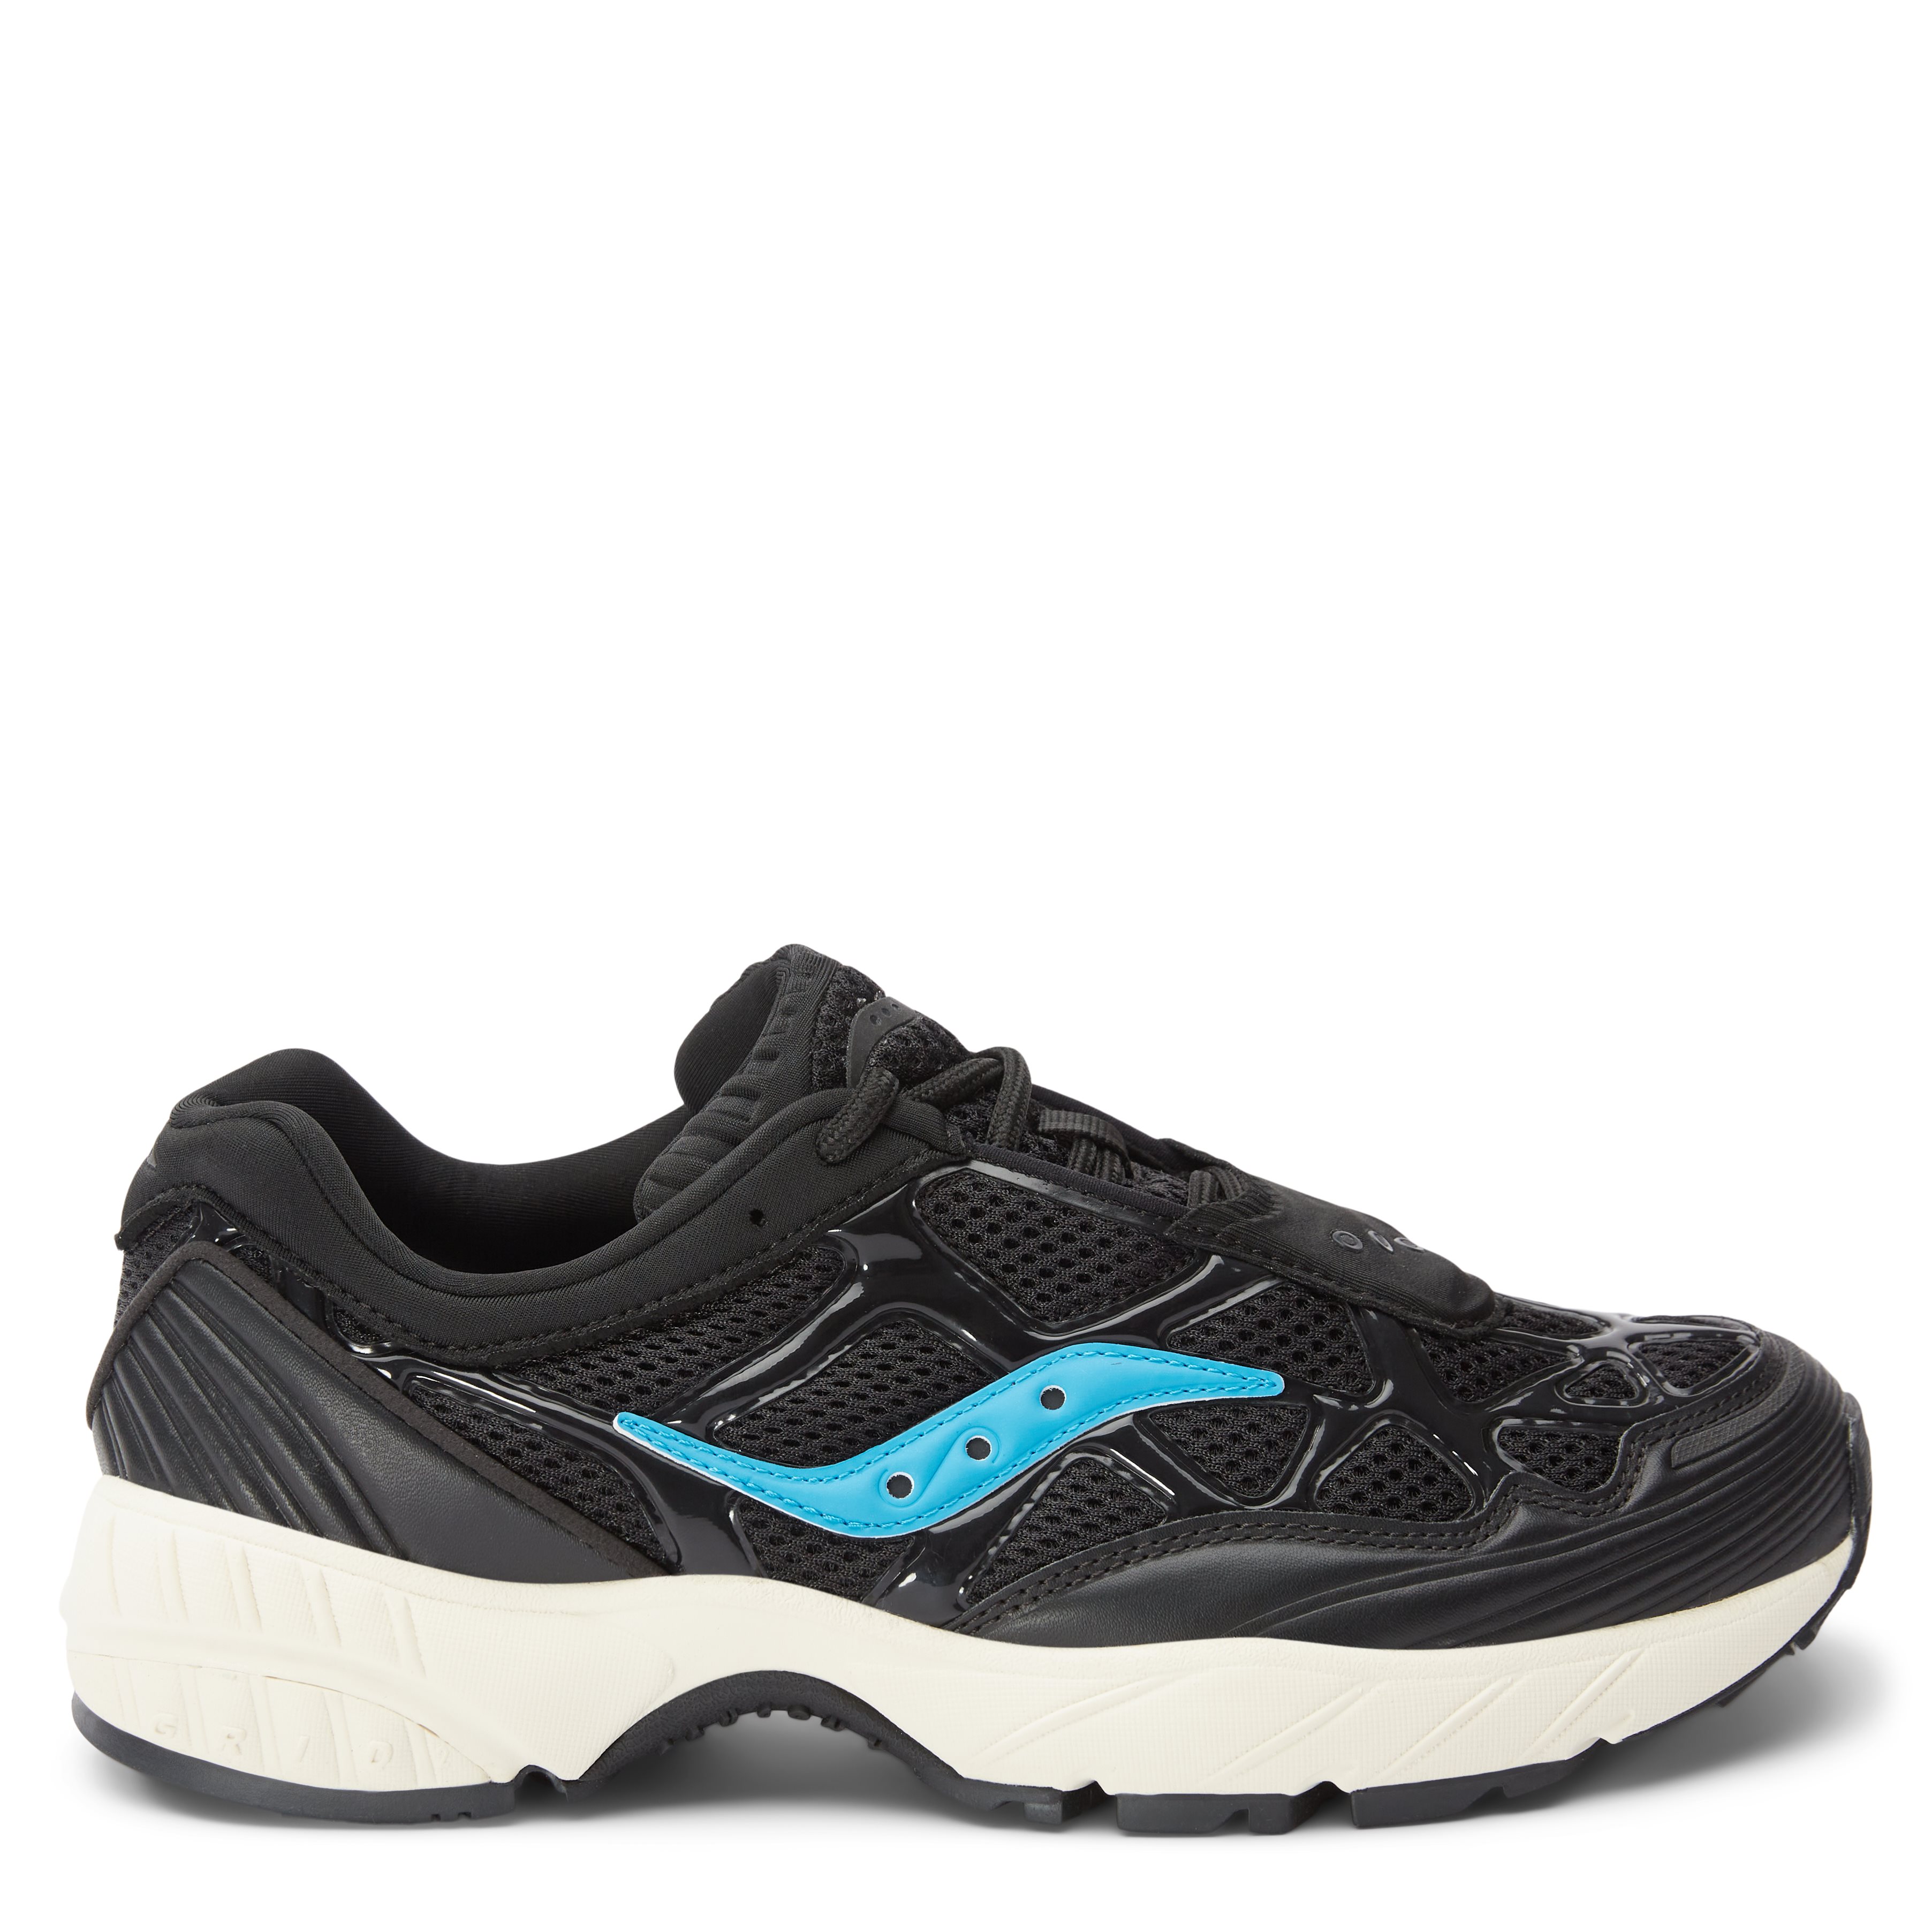 Saucony Shoes GRID WEB S70466-10 Black